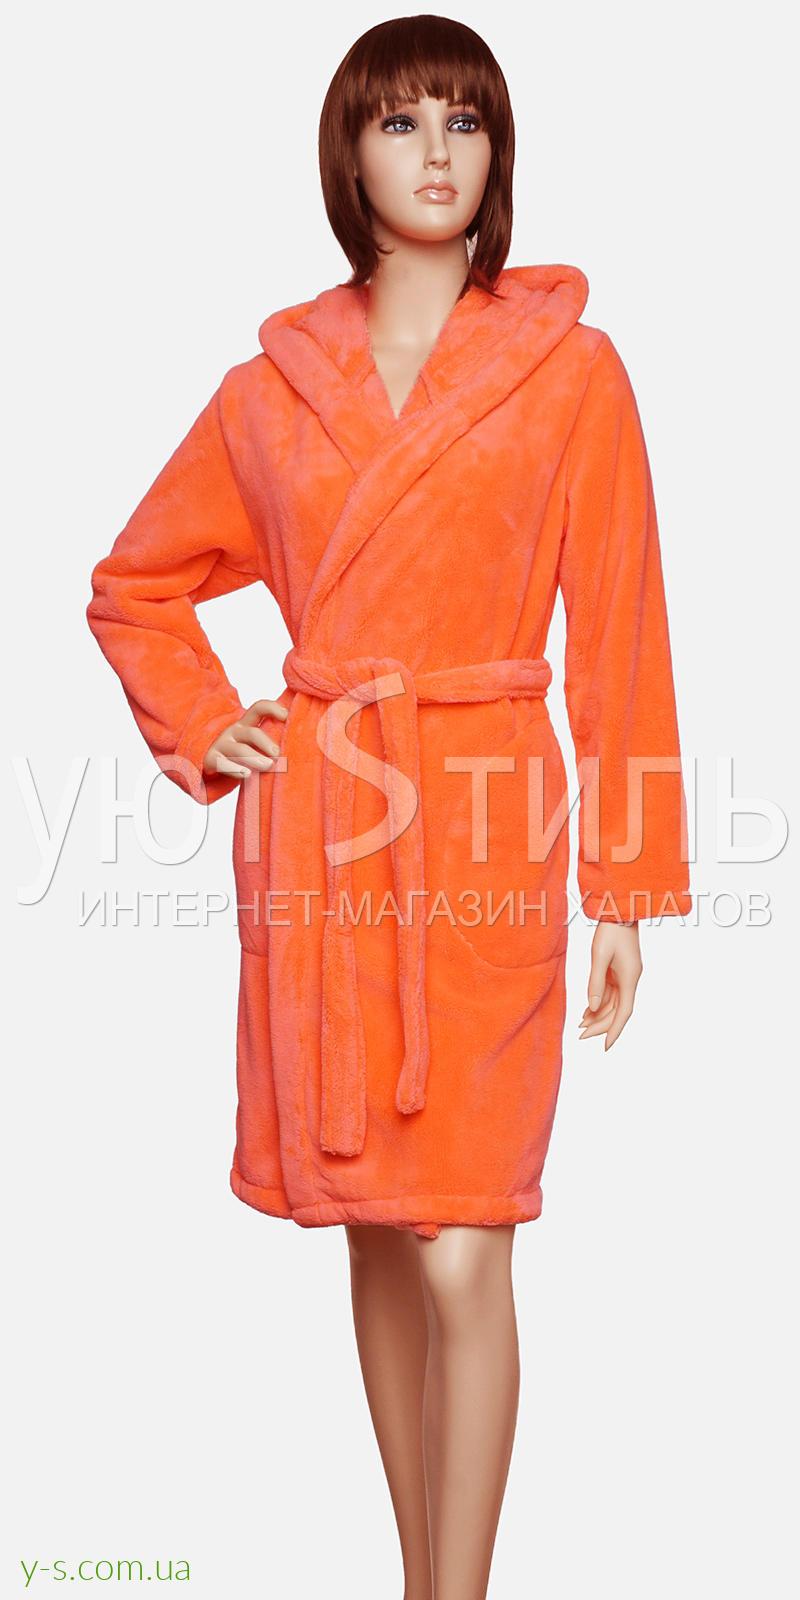 Женский пушистый халат с капюшоном VA4103 неоново-оранжевый цвет